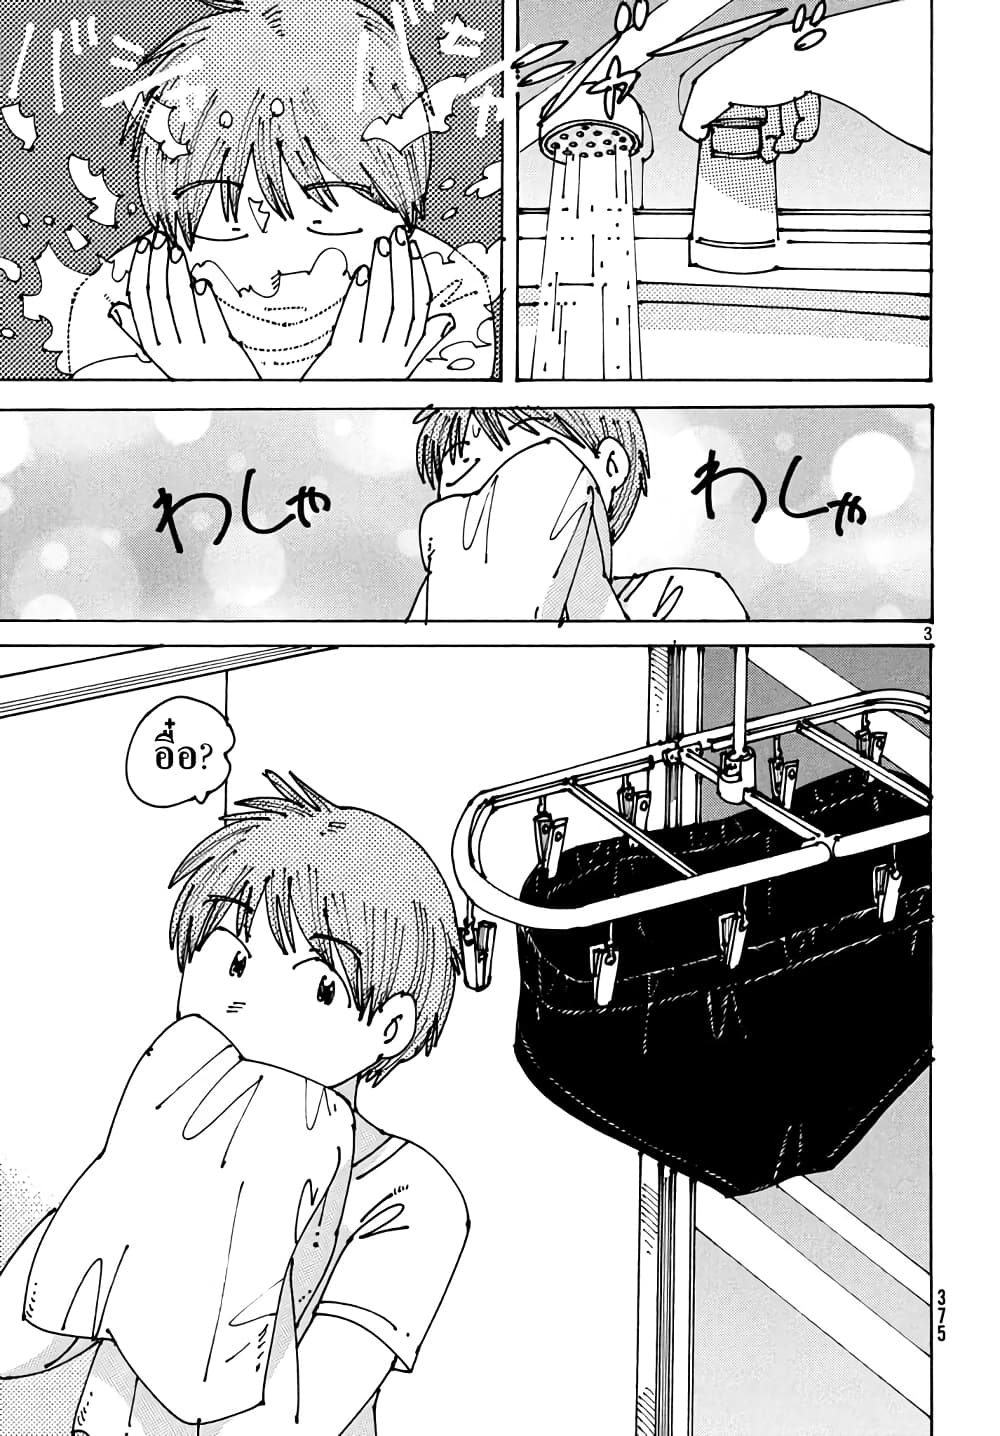 Ookumo-chan Flashback 6-บลูมเมอร์คือลอสต์เทคโนโลยีจากชาติปางก่อนที่ทำให้เด็กผู้หญิงดูน่ารักขึ้นไง